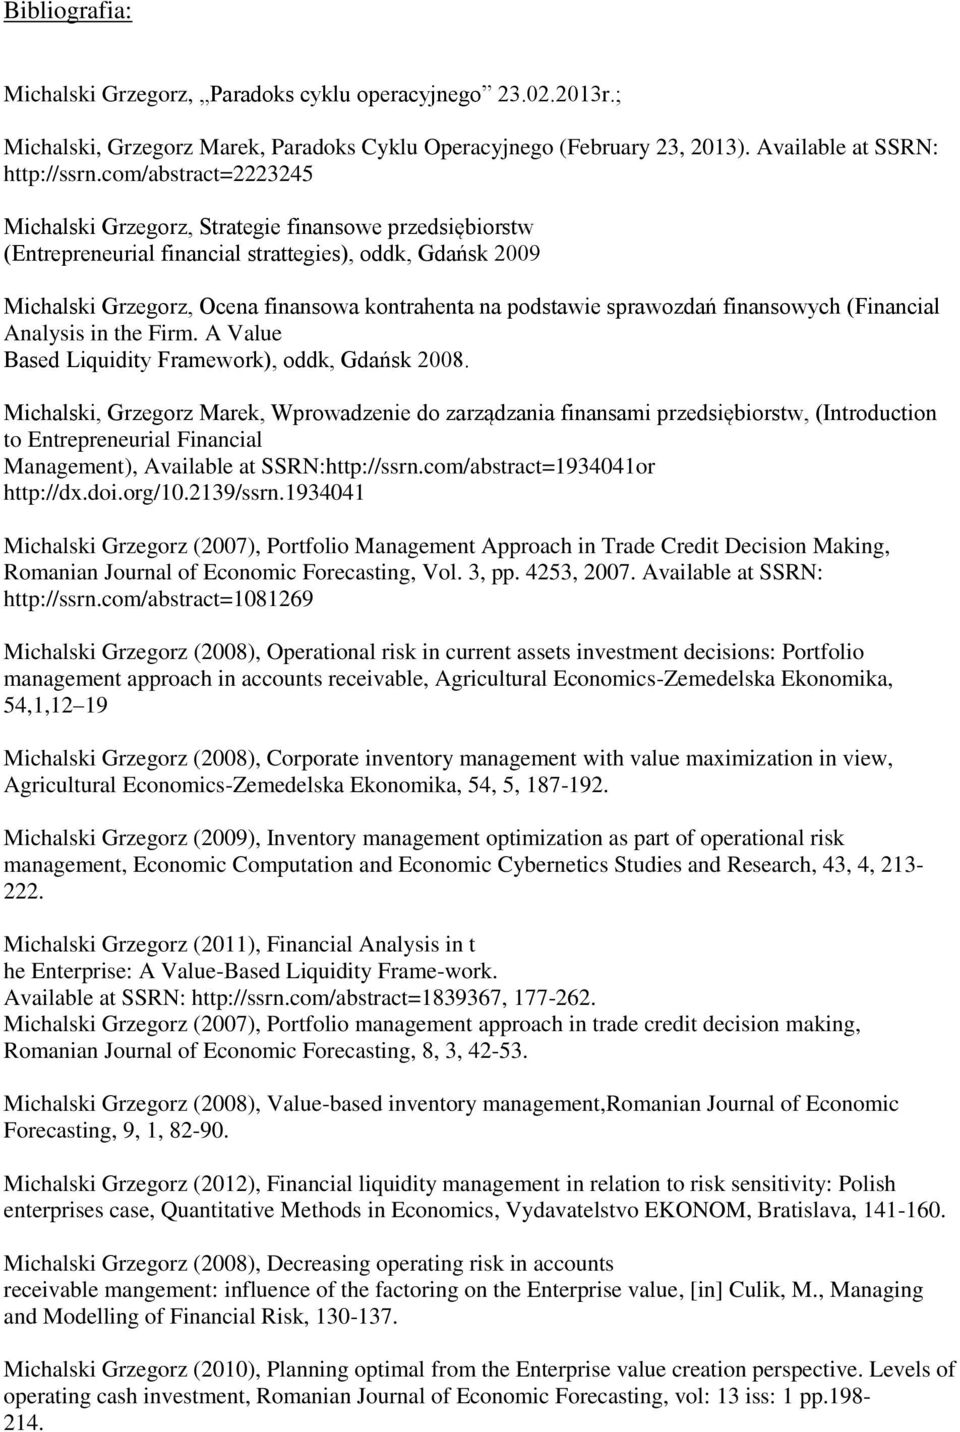 sprawozdań finansowych (Financial Analysis in the Firm. A Value Based Liquidity Framework), oddk, Gdańsk 2008.